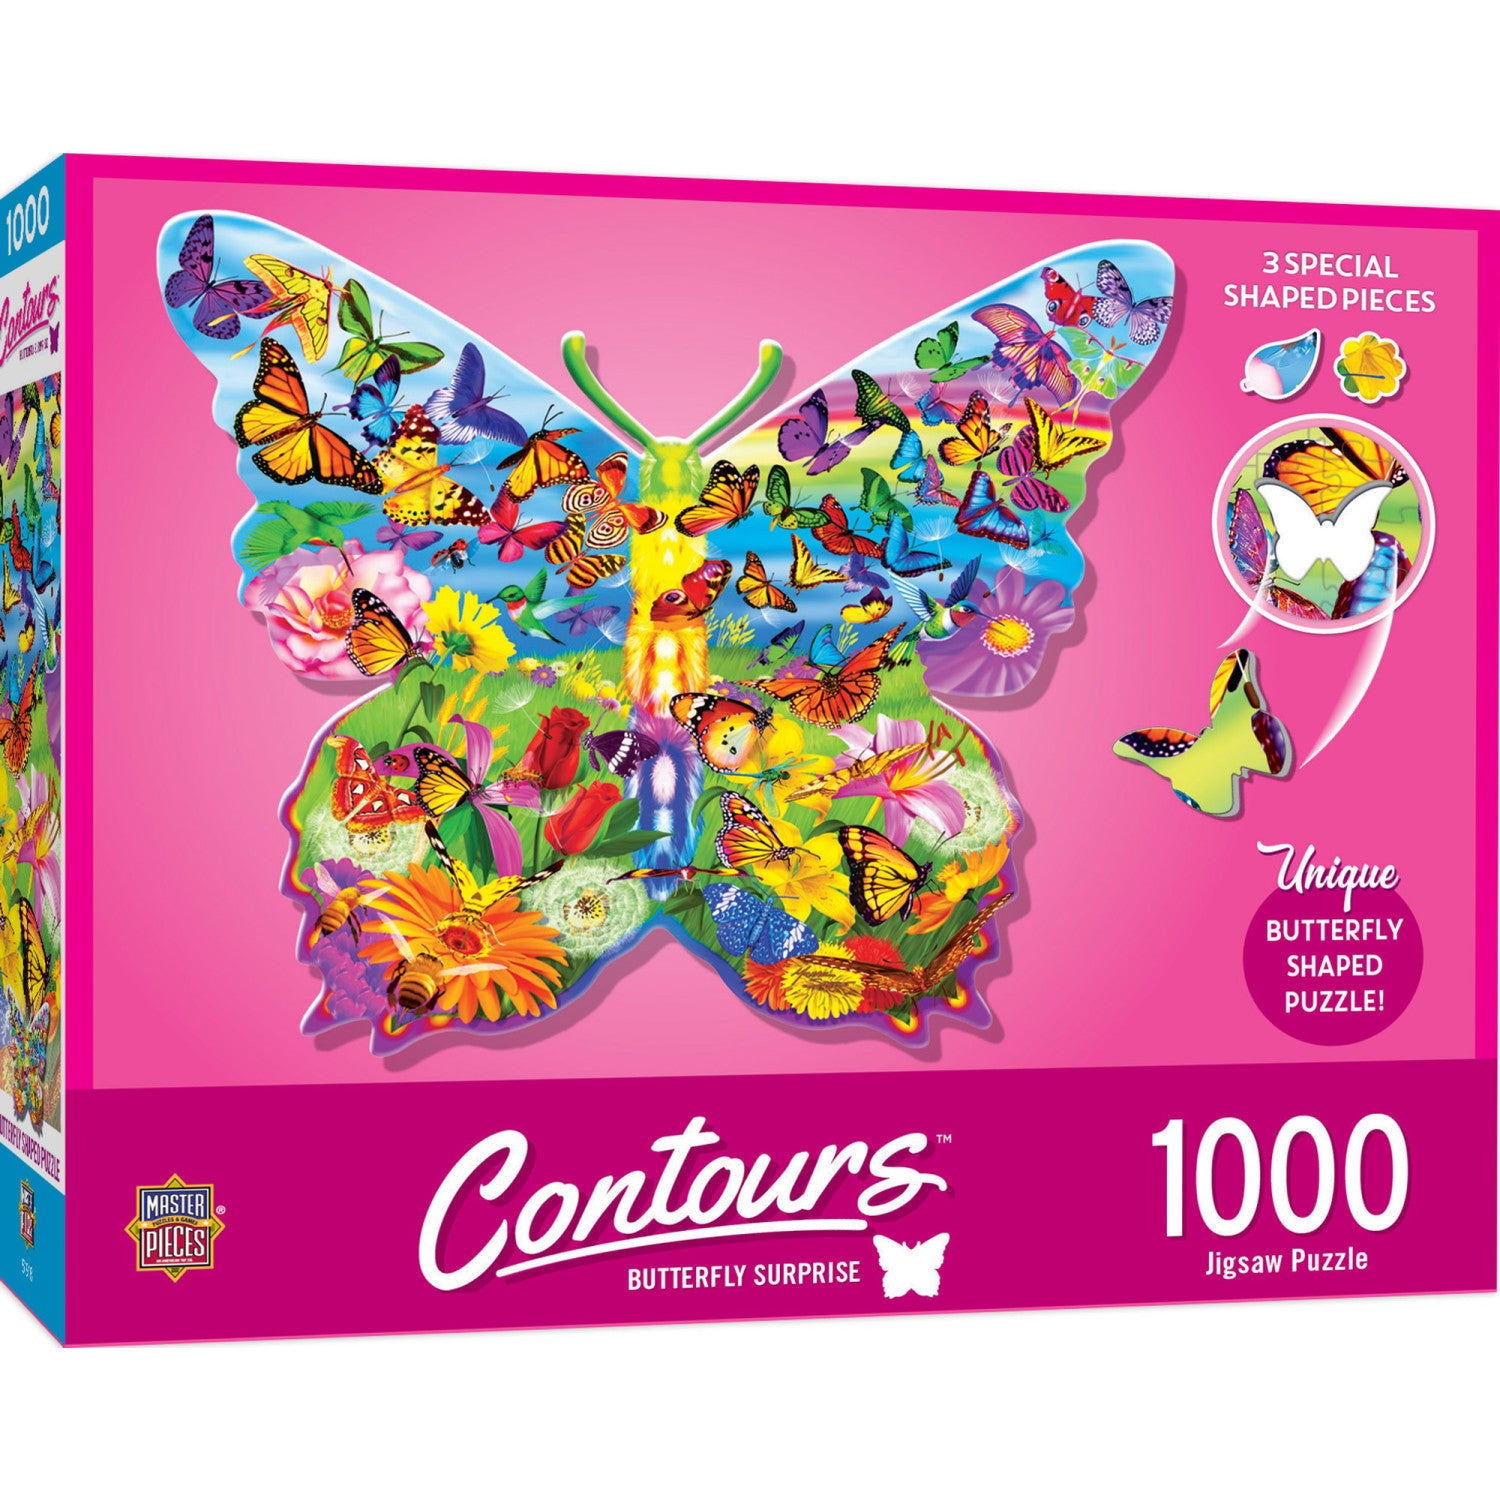 Contours - Butterfly Surprise 1000 Piece Shaped Puzzle